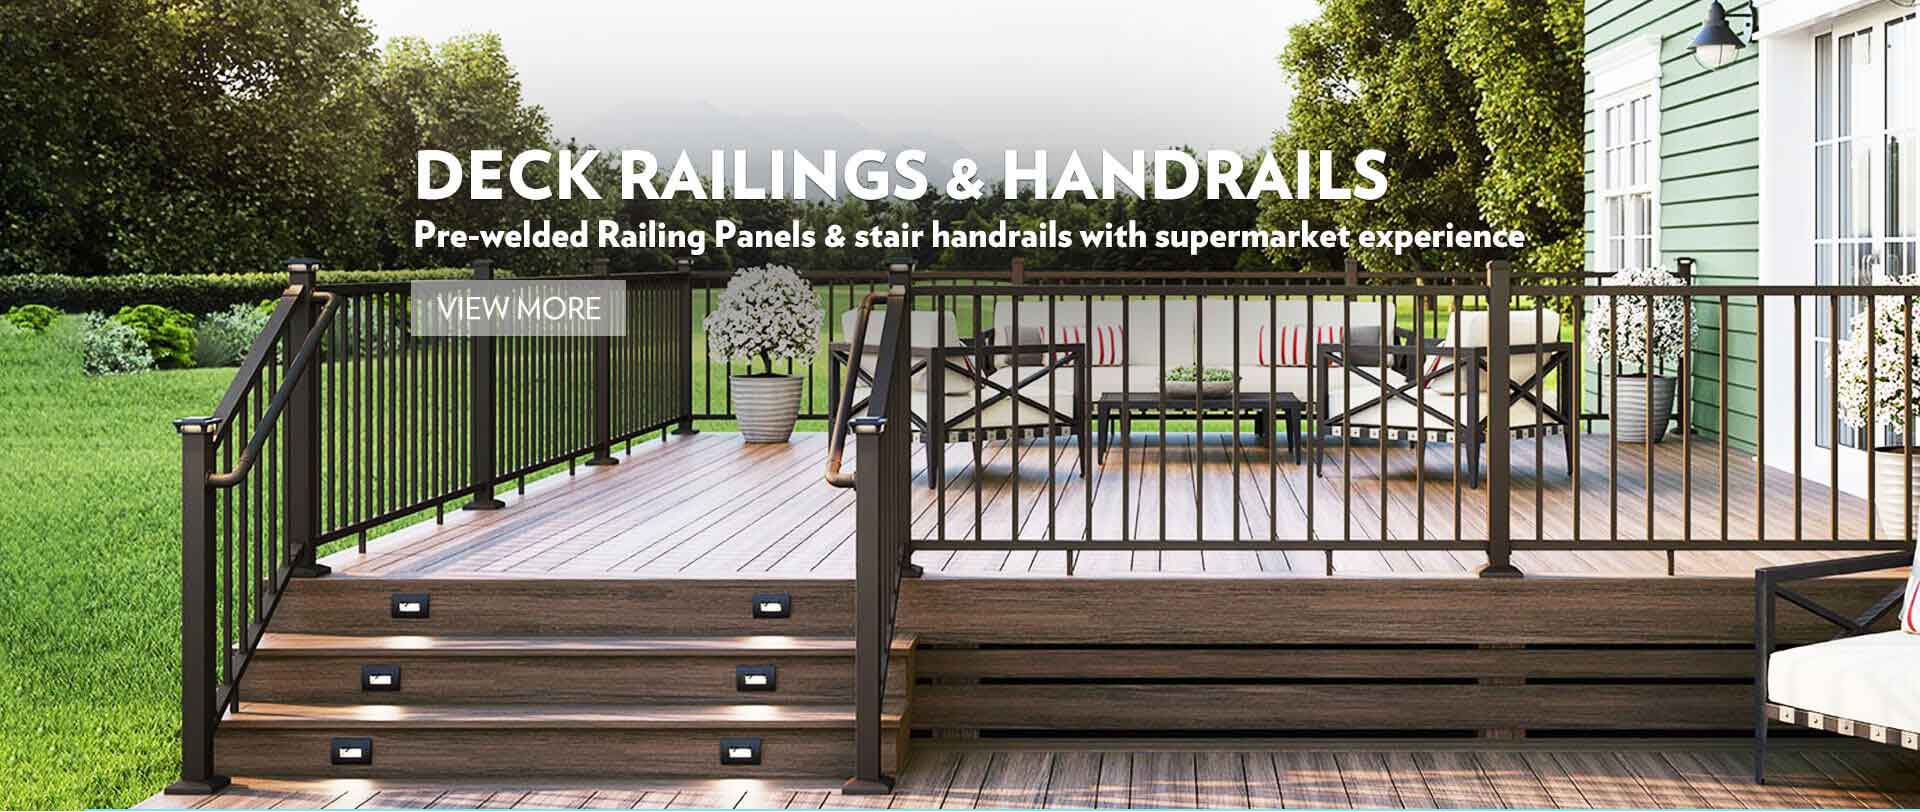 Deck Railings & Handrails